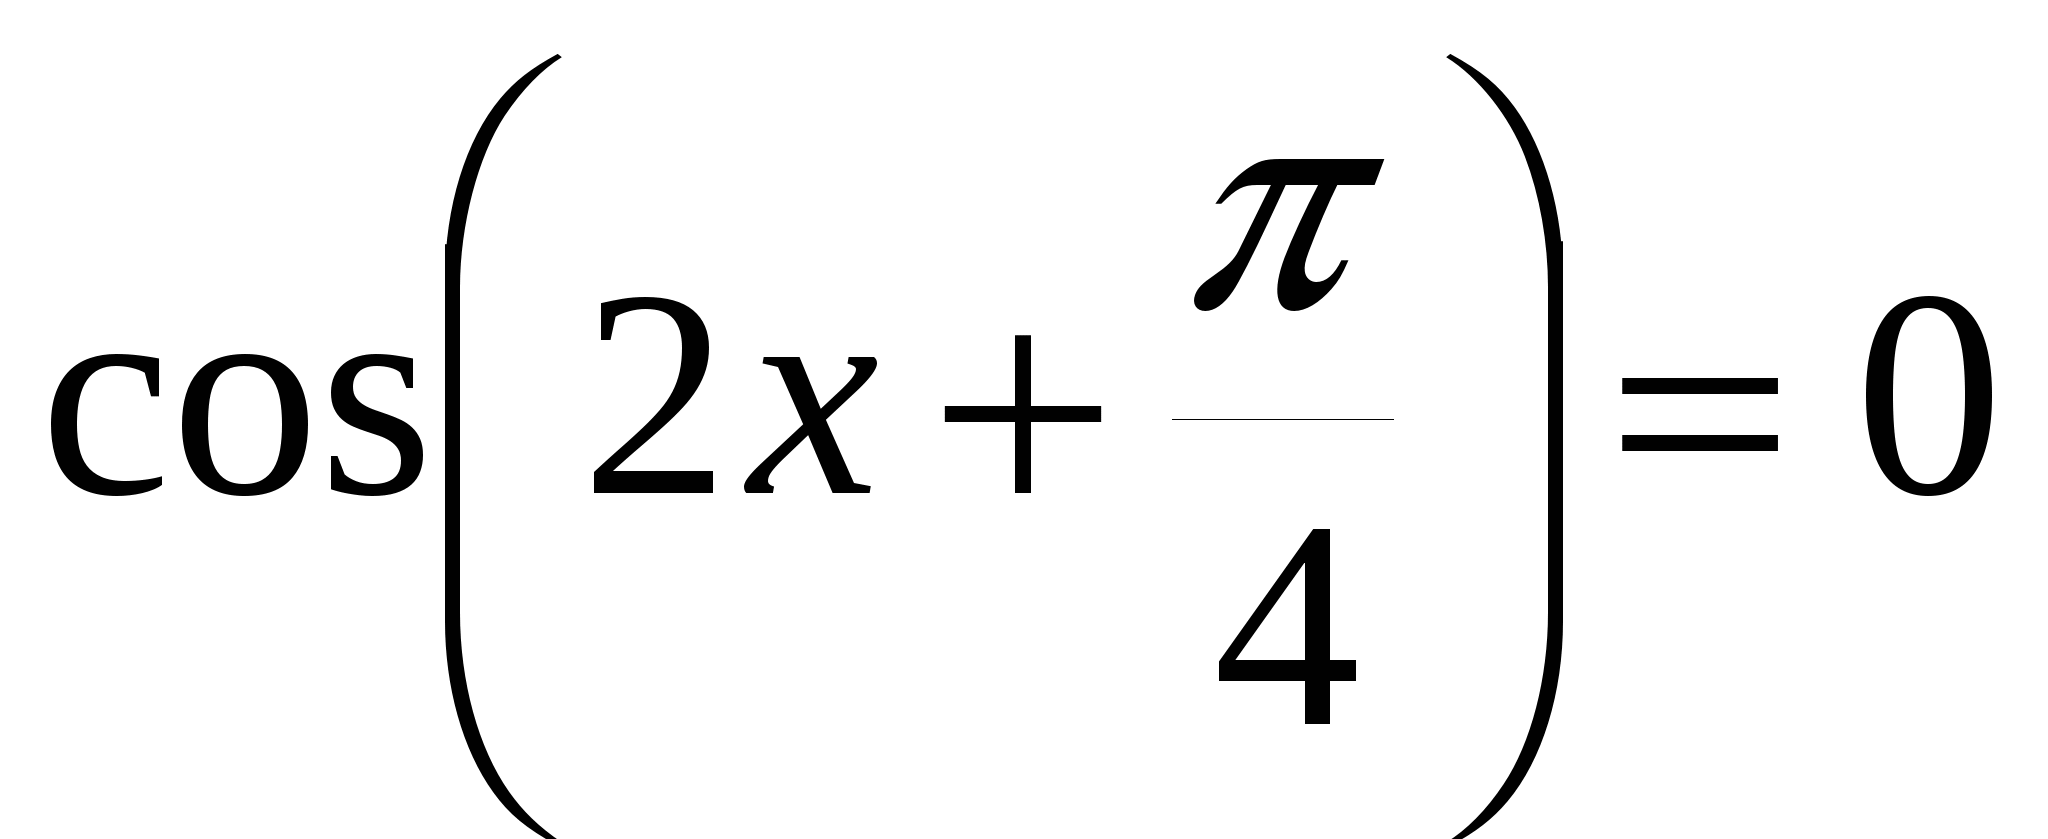 Зачетная работа по алгебре и началам математического анализа для учащихся 11 класса по теме «Тригонометрические формулы. Тригонометрические уравнения».